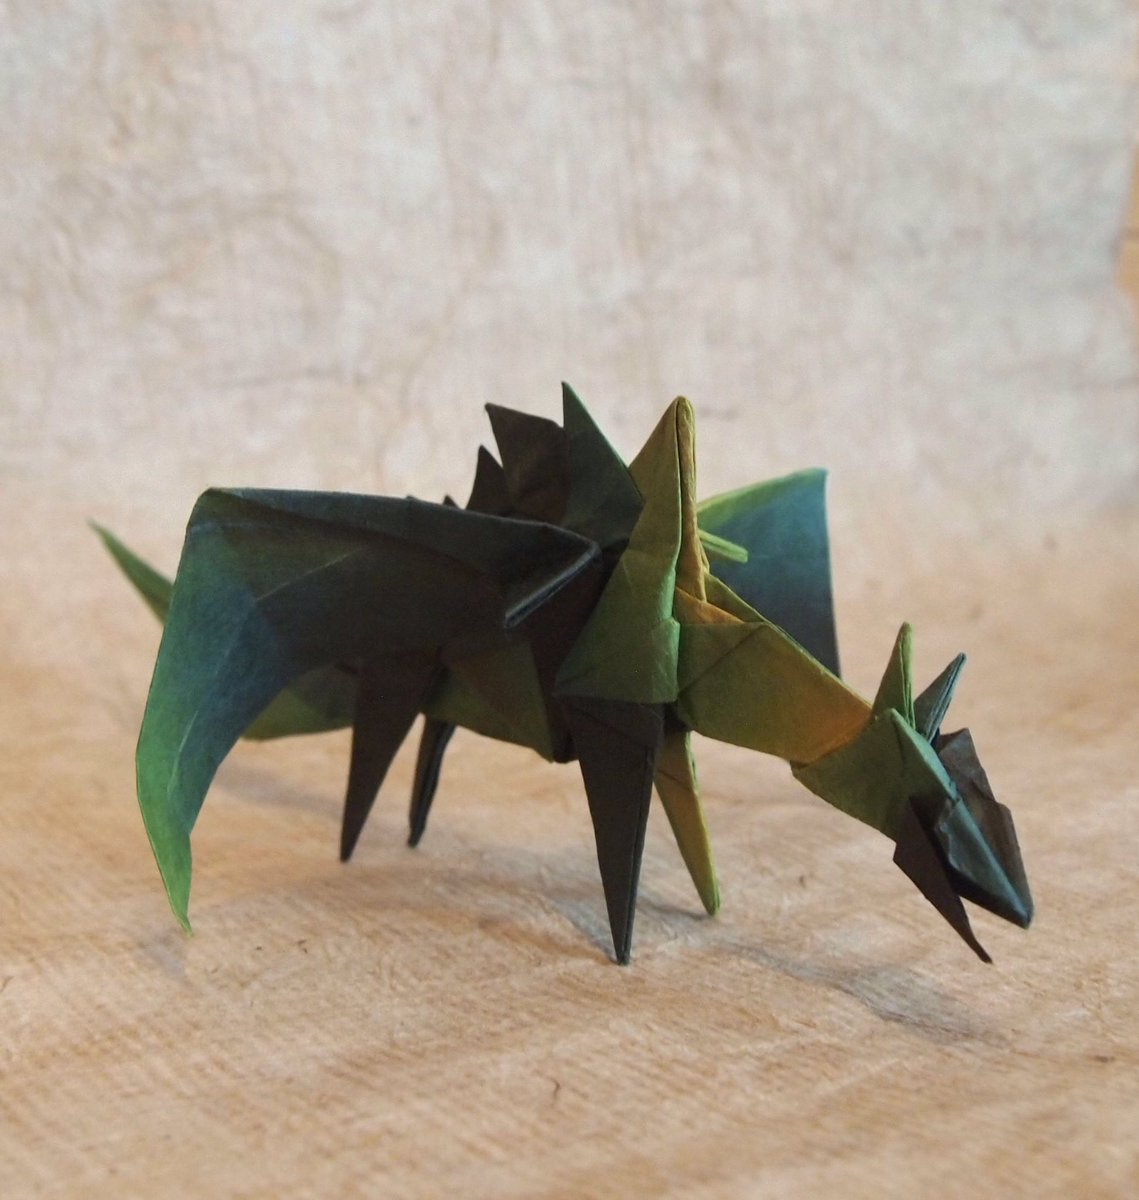 ট ইট র 一匹柴犬 折り紙作品 ドラゴン 創作 折り 一匹柴犬 いわゆる鶴ドラゴンを試したらドラゴンが折れました Origami 折り紙 Dragon ドラゴン